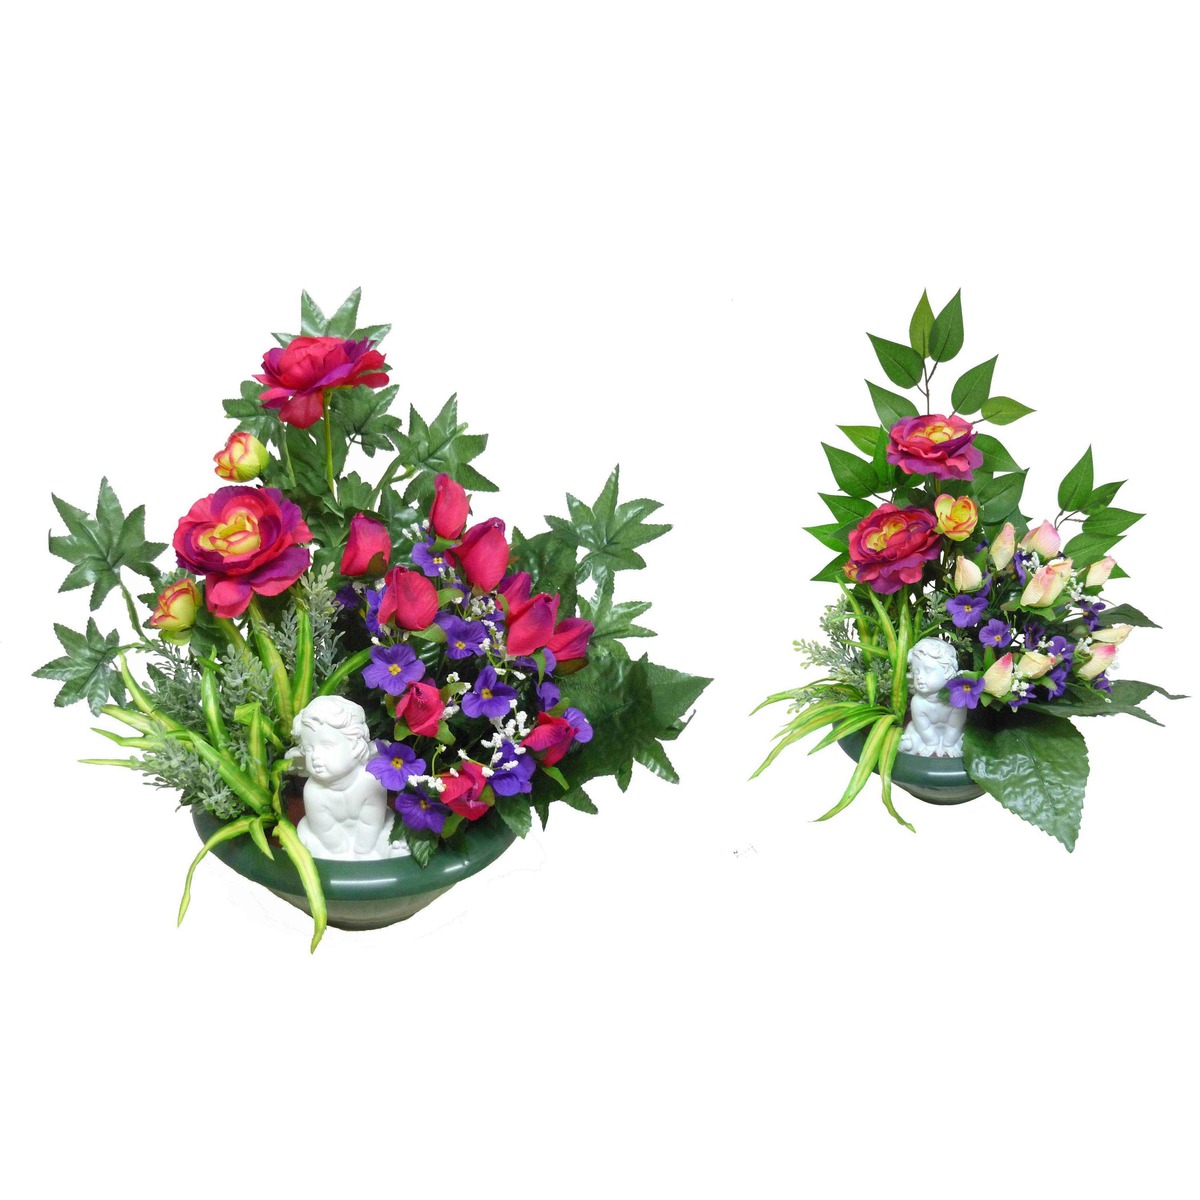 Coupe roses + St paulia + renoncules - Hauteur 50 cm - Différents modèles